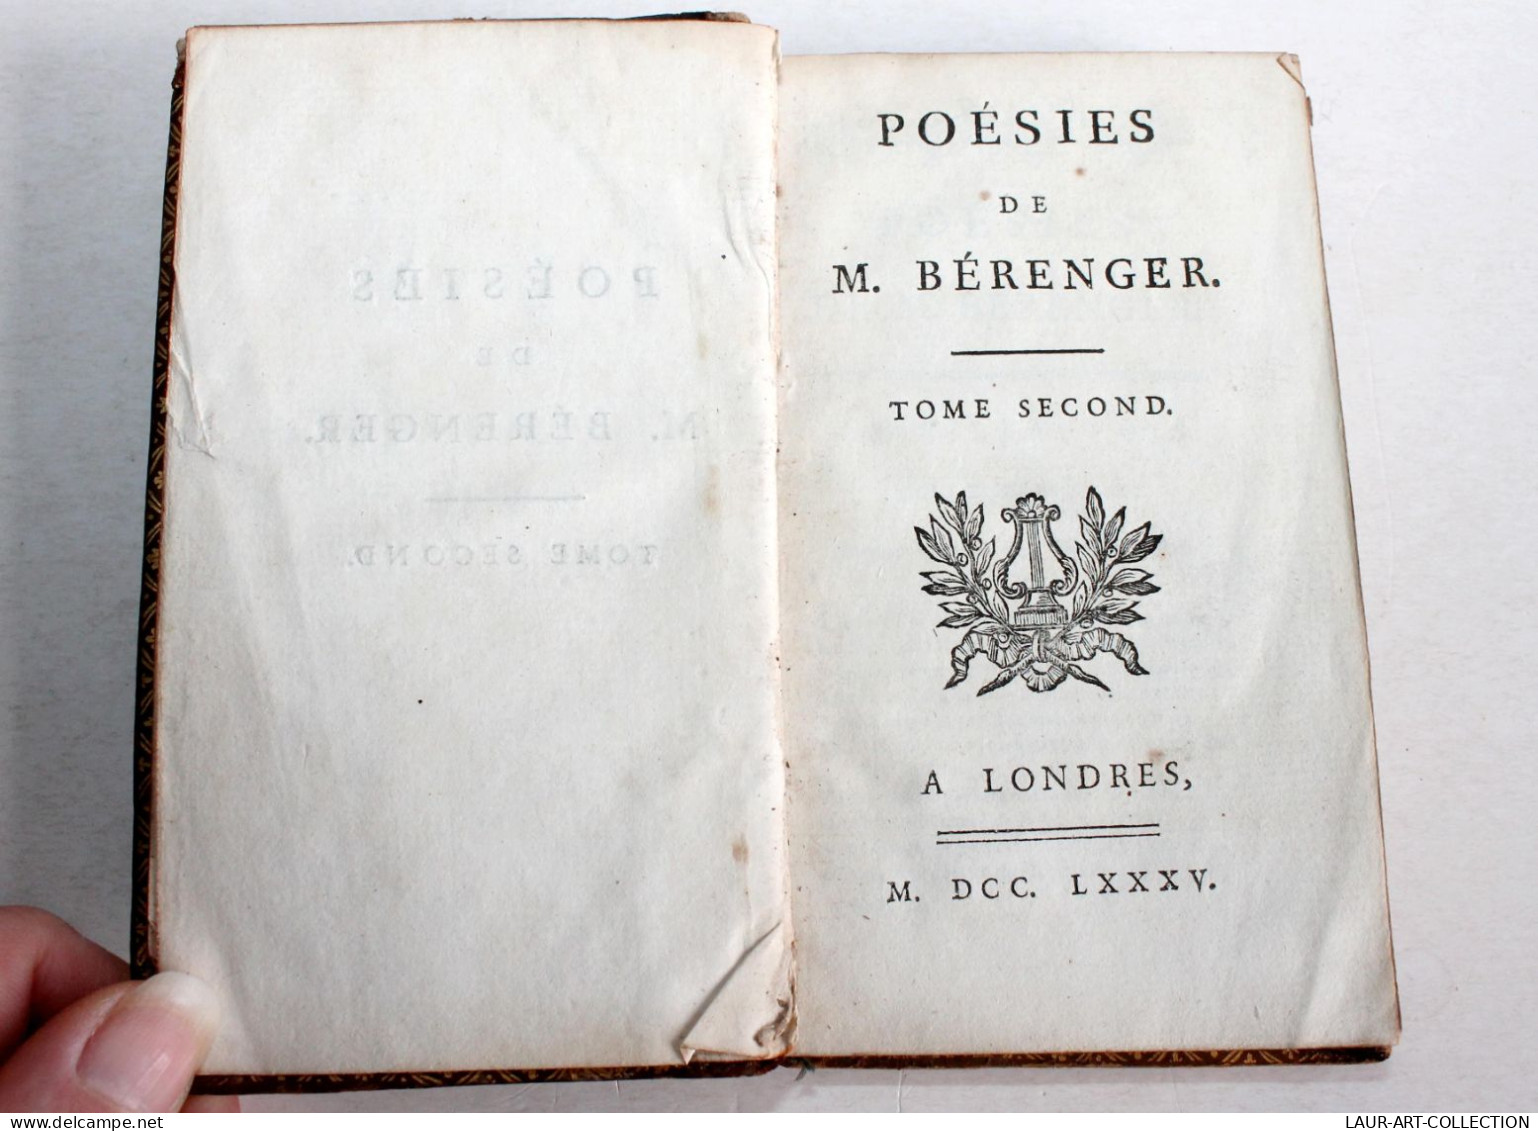 POESIES DE M. BERANGER TOME SECOND 1785 A LONDRES, LIVRE 18e CONTENANT 55 PIECES / ANCIEN LIVRE XVIIIe SIECLE (1803.132) - Autores Franceses